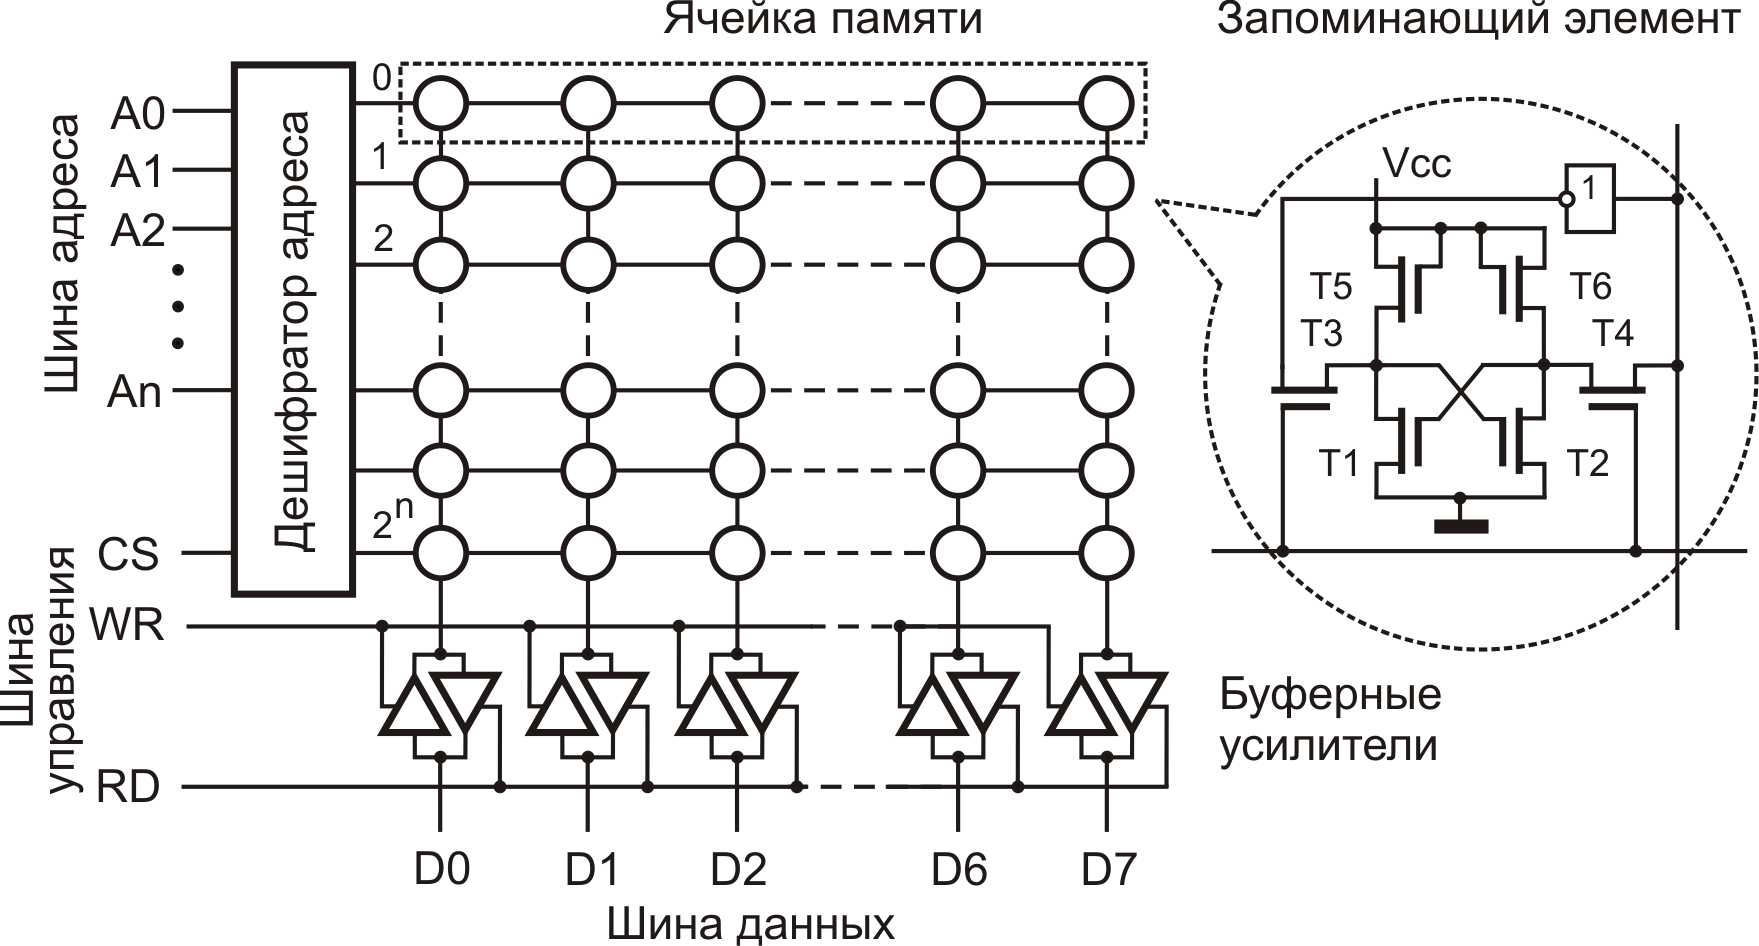 Количество ячеек памяти. Ячейка памяти компьютера схема. Феррит-транзисторная ячейка памяти. Схема ячейки памяти ОЗУ. Схема ячейки памяти на 1 бит.